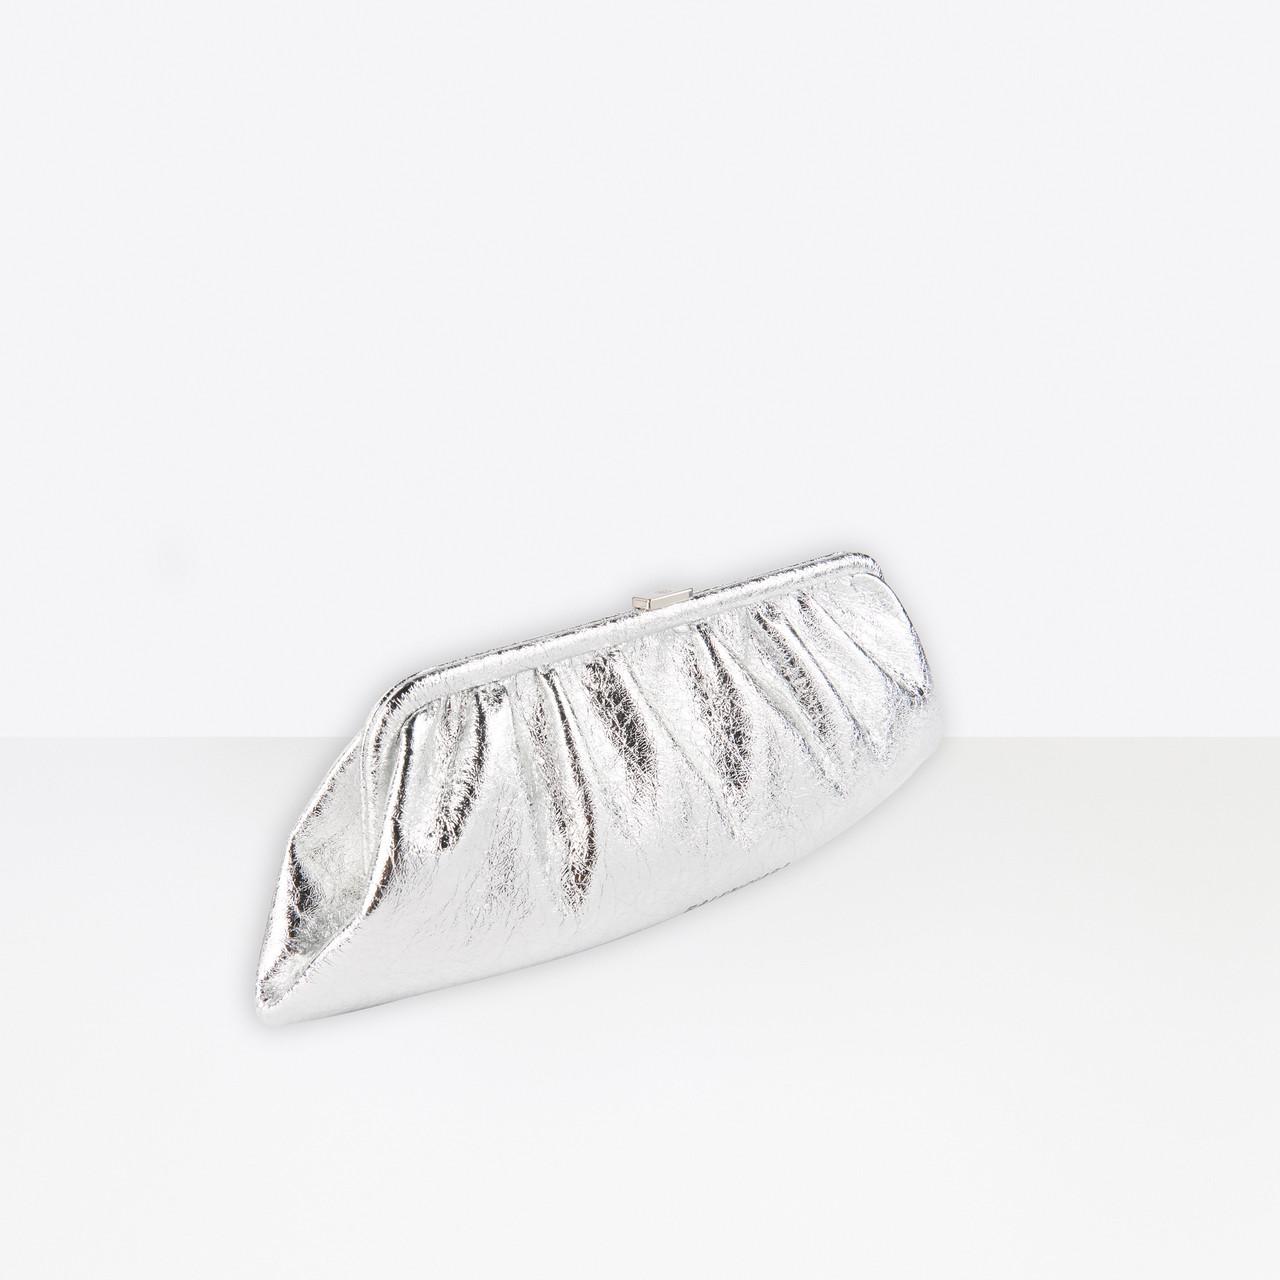 Balenciaga Cloud Xl Clutch With Strap in Metallic | Lyst